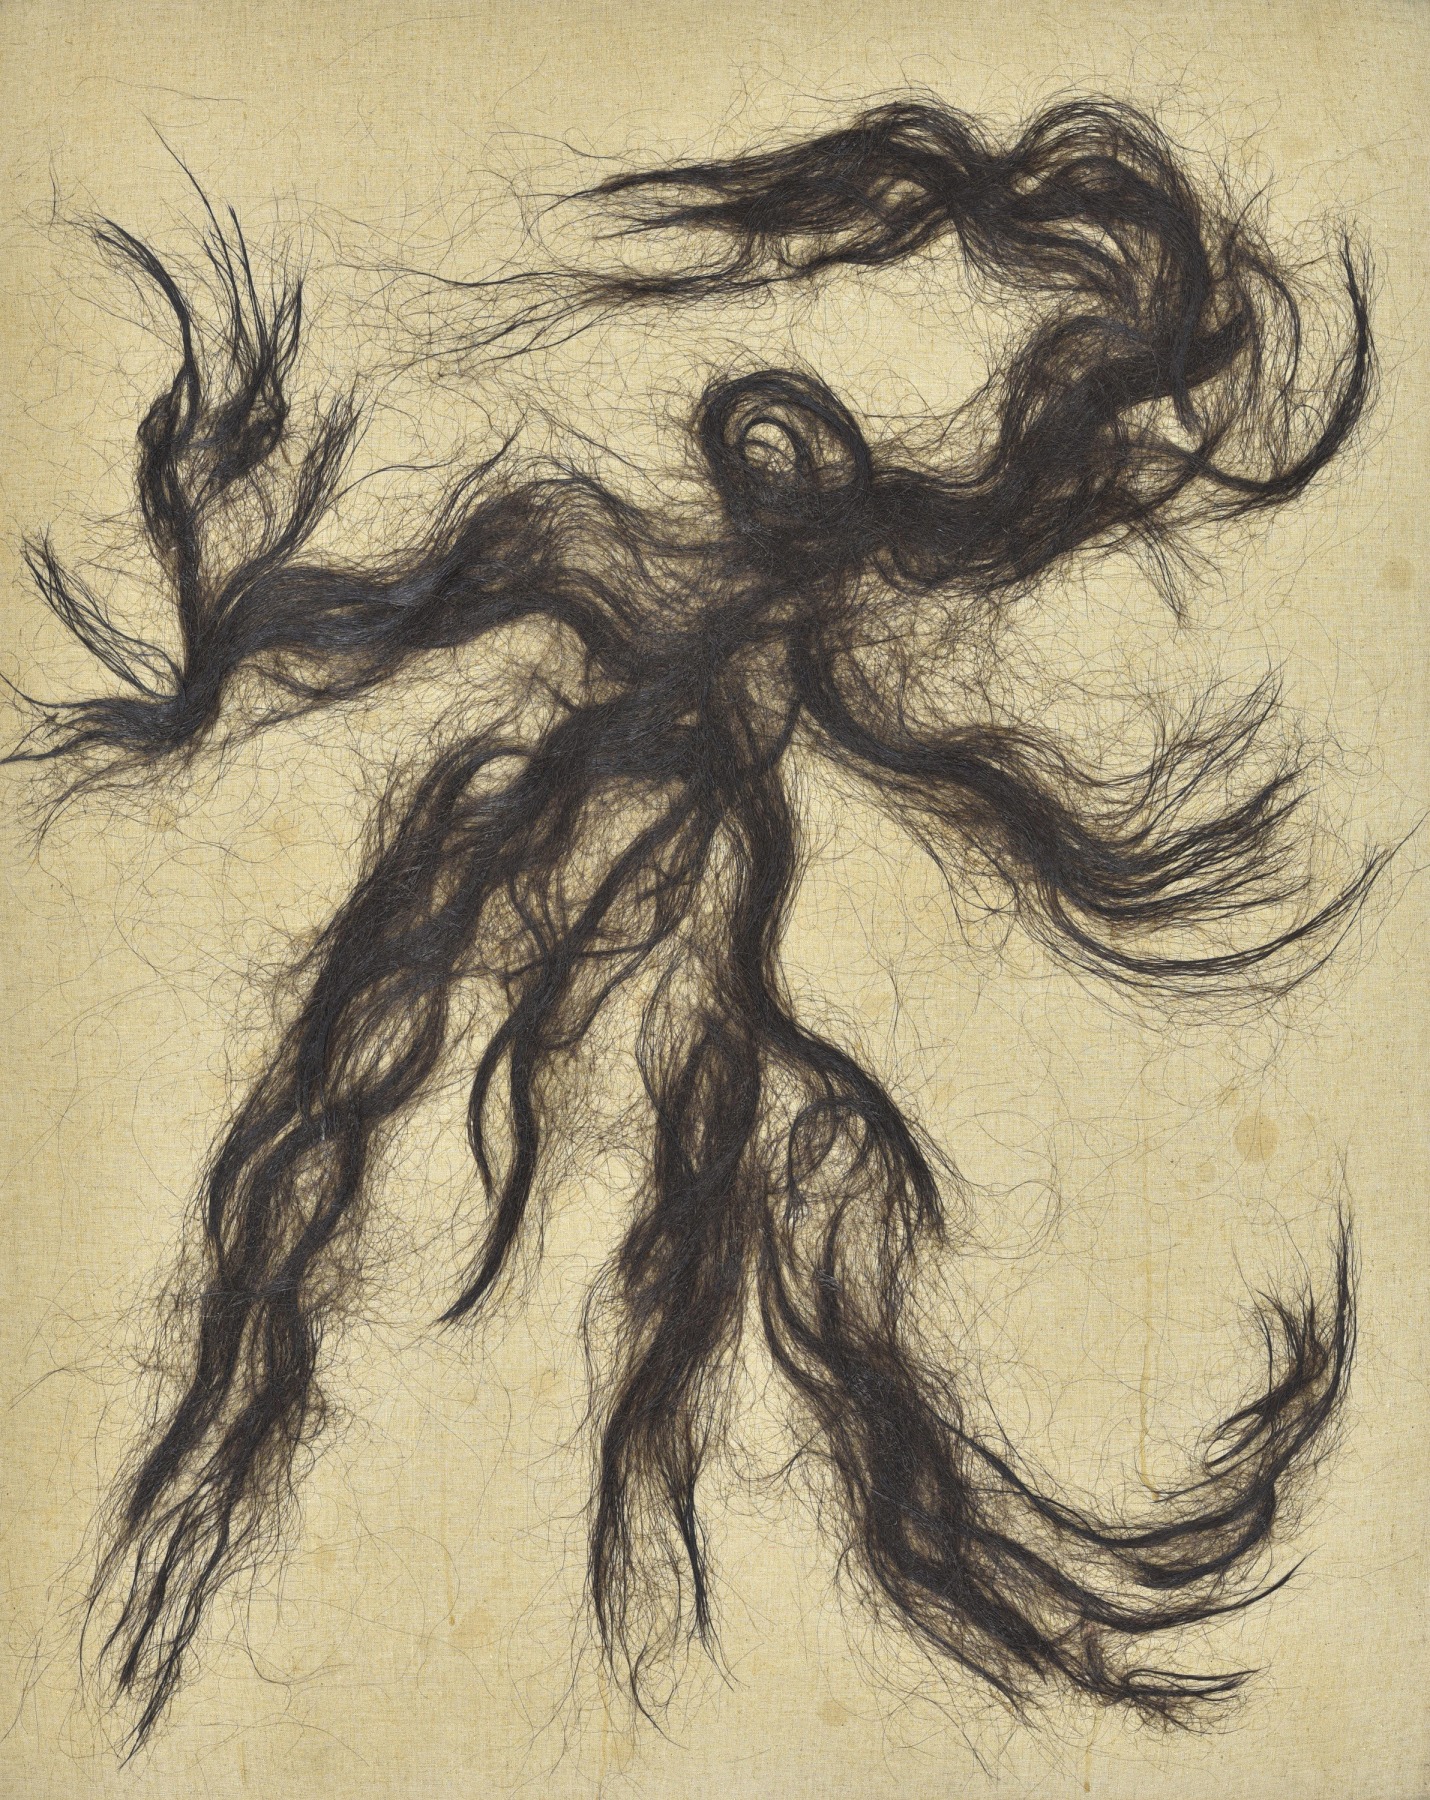 Seung-taek Lee

&amp;ldquo;Dance&amp;rdquo;, 1983

Hair on canvas

39 1/4 x 31 1/2 inches

100 x 80.5 cm

LEE 14

$40,000